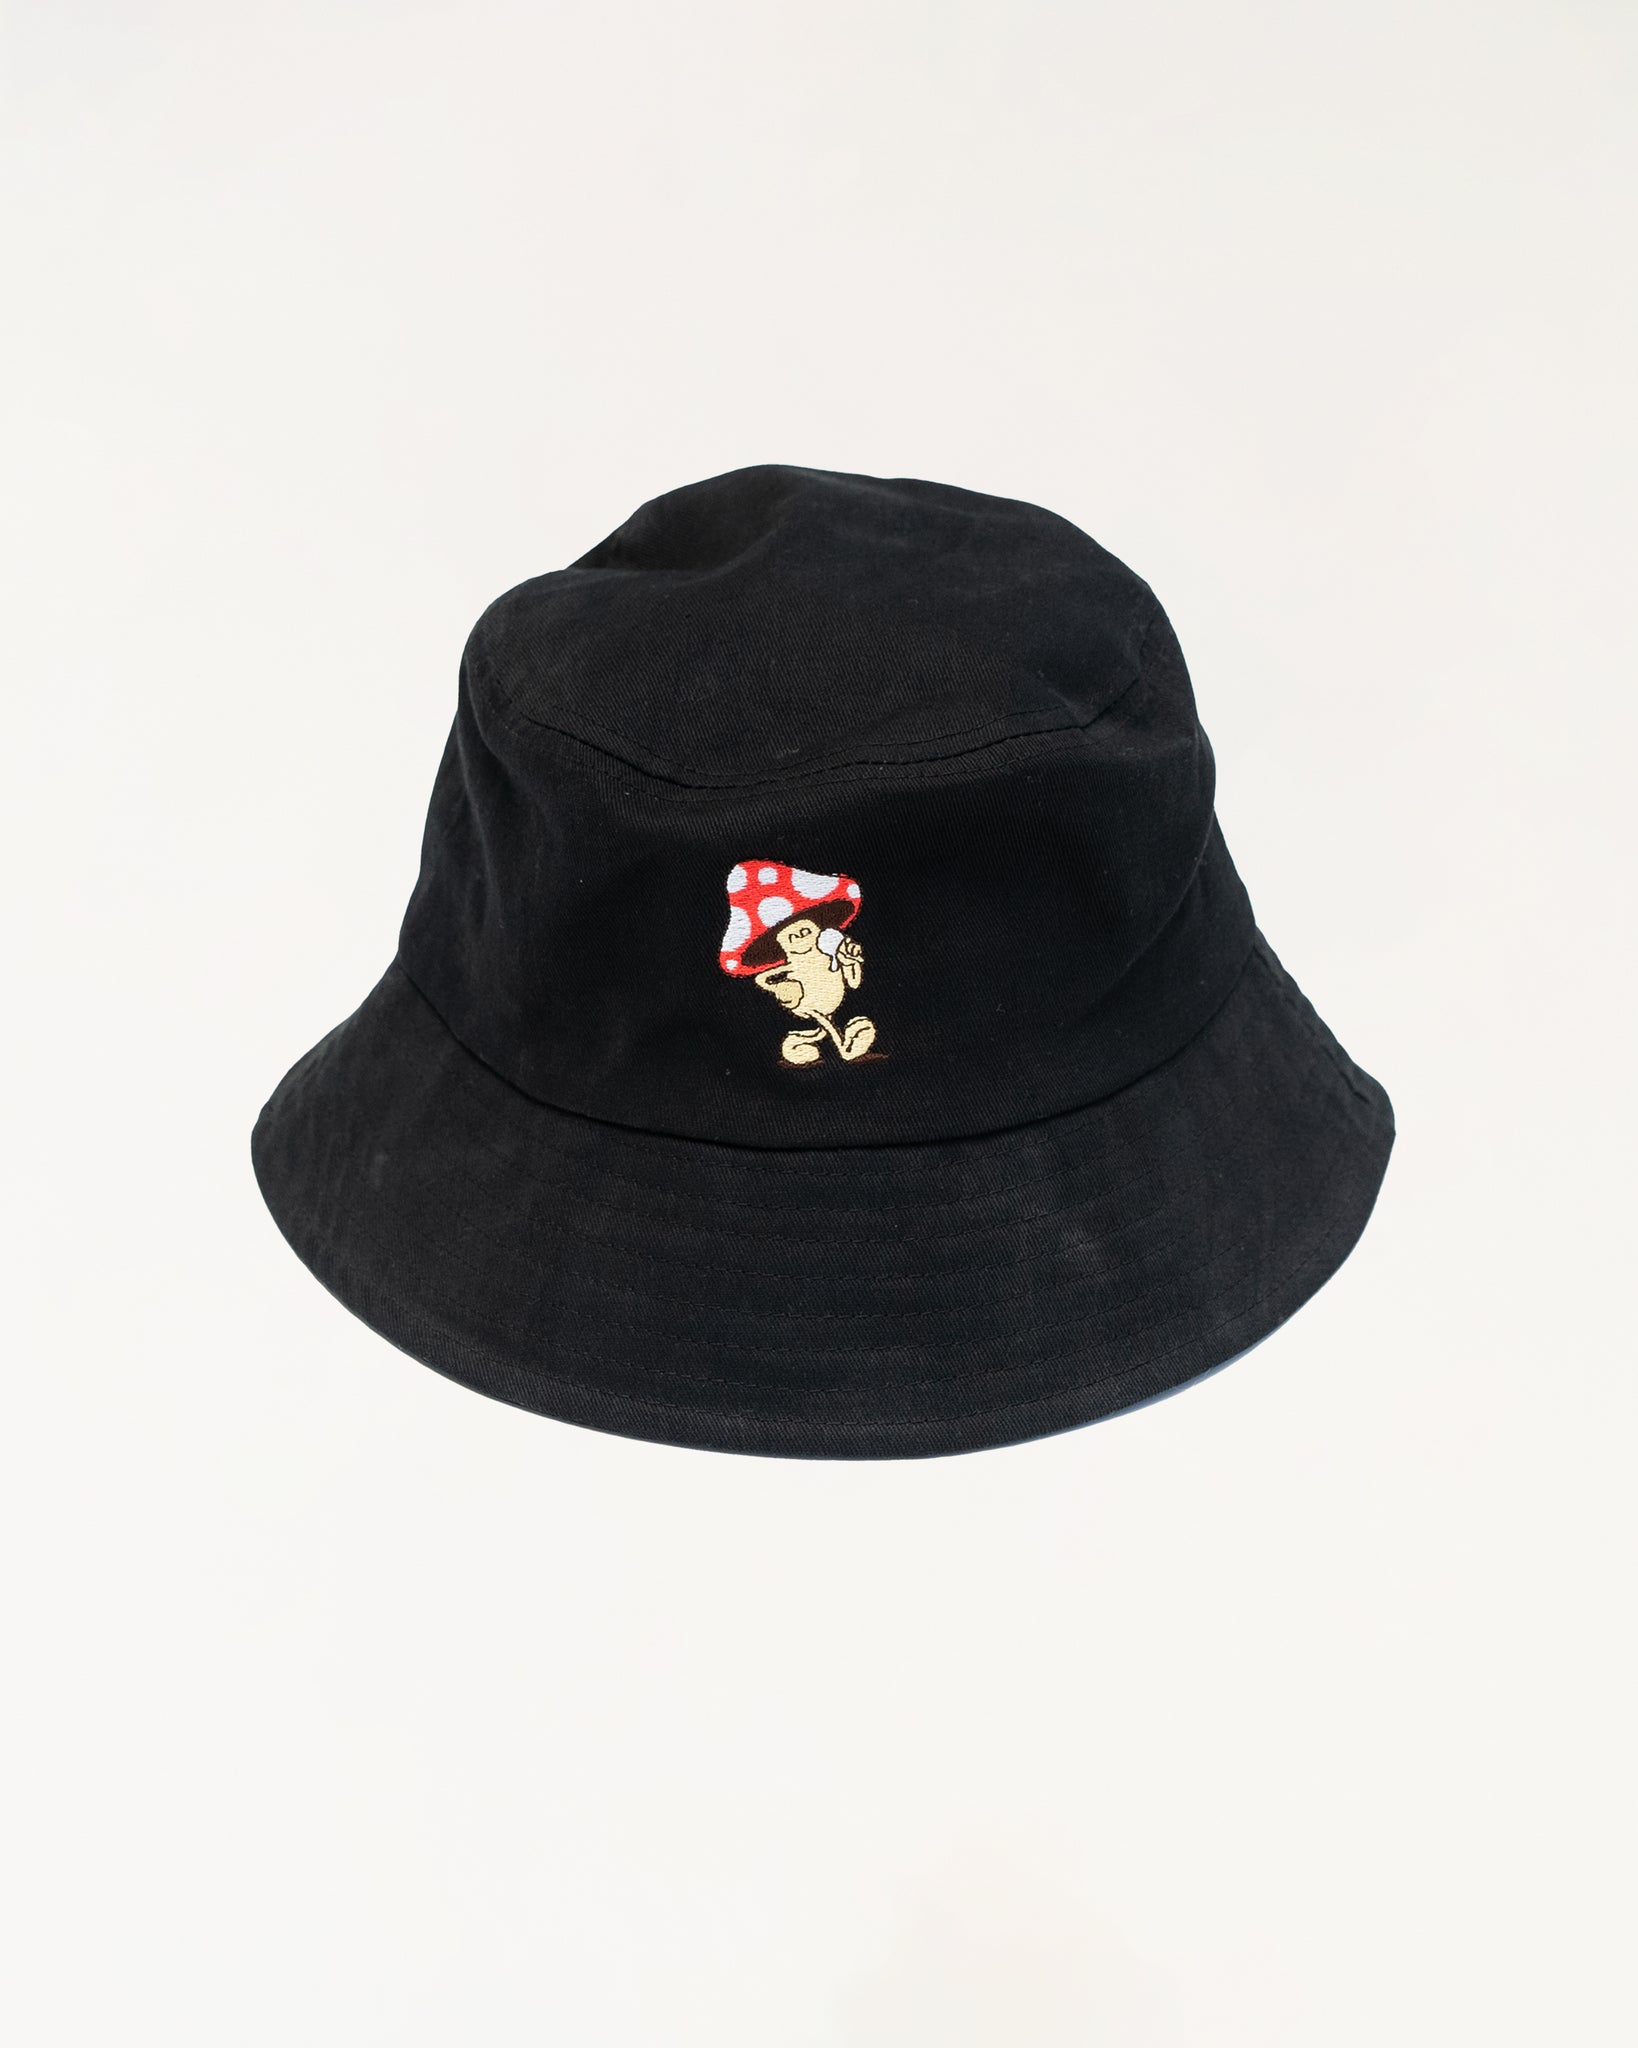 Serial Chiller Bucket Hat - Black